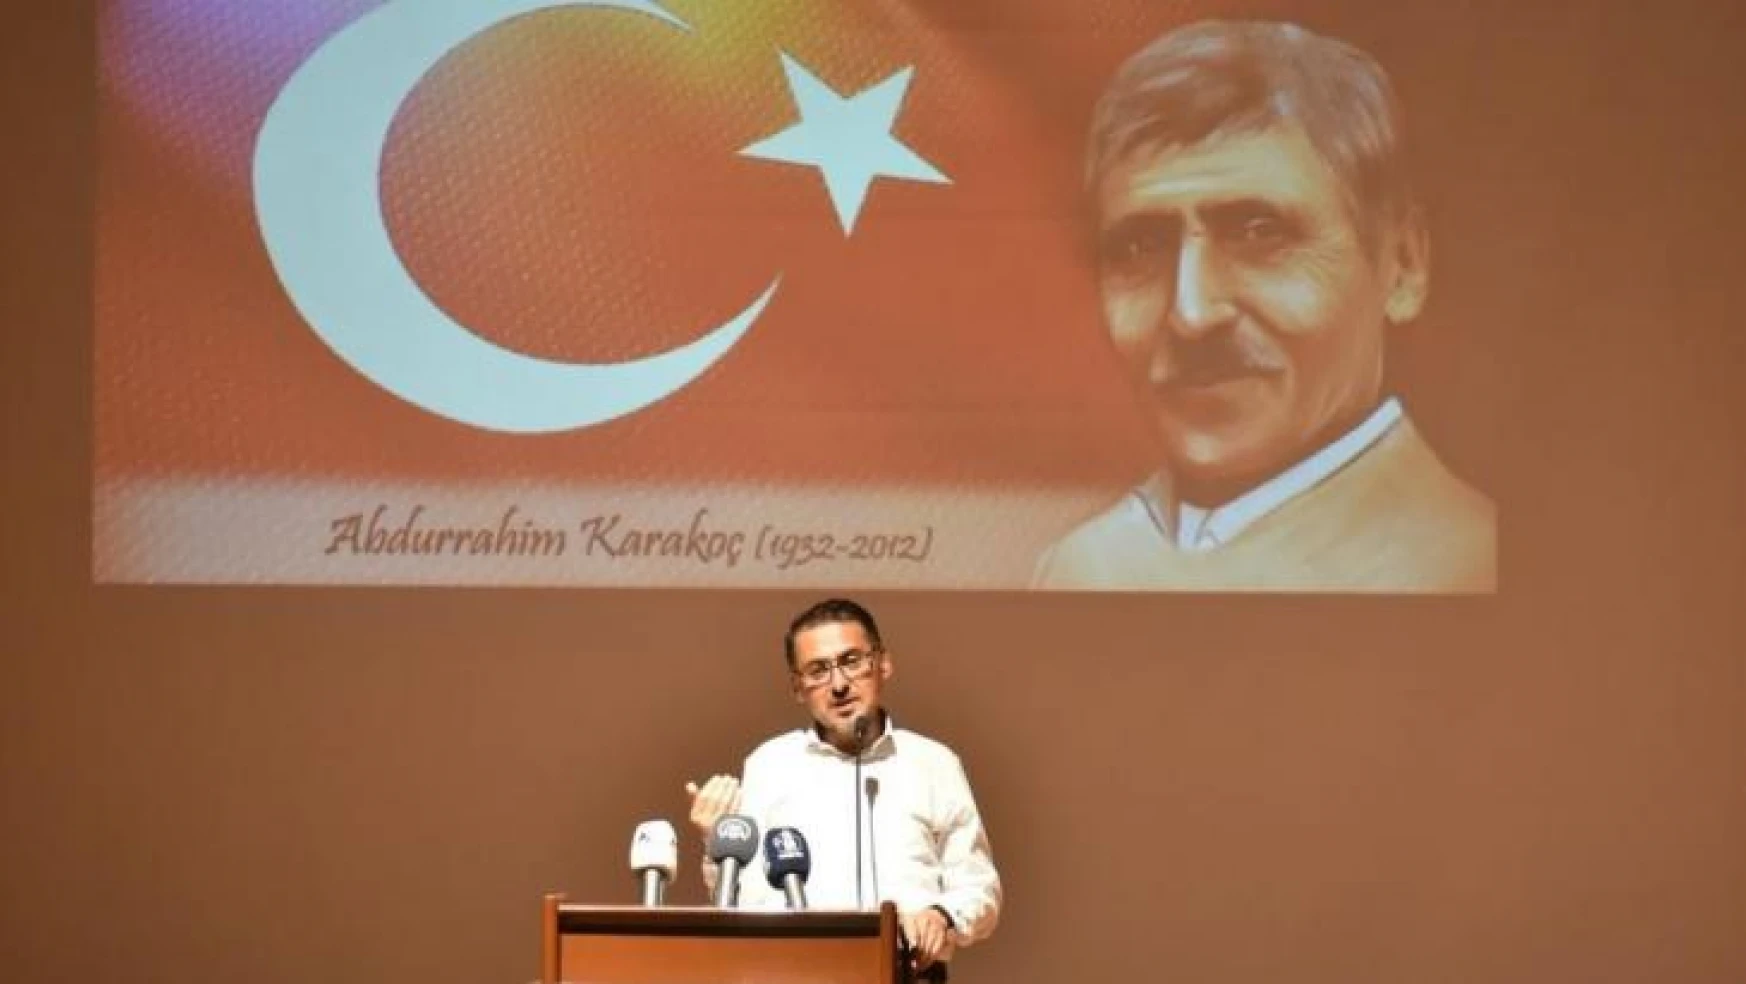 'Abdurrahim Karakoç, Nizam-ı Alem, i'lâ-yi kelimetullah davasından vazgeçmedi'